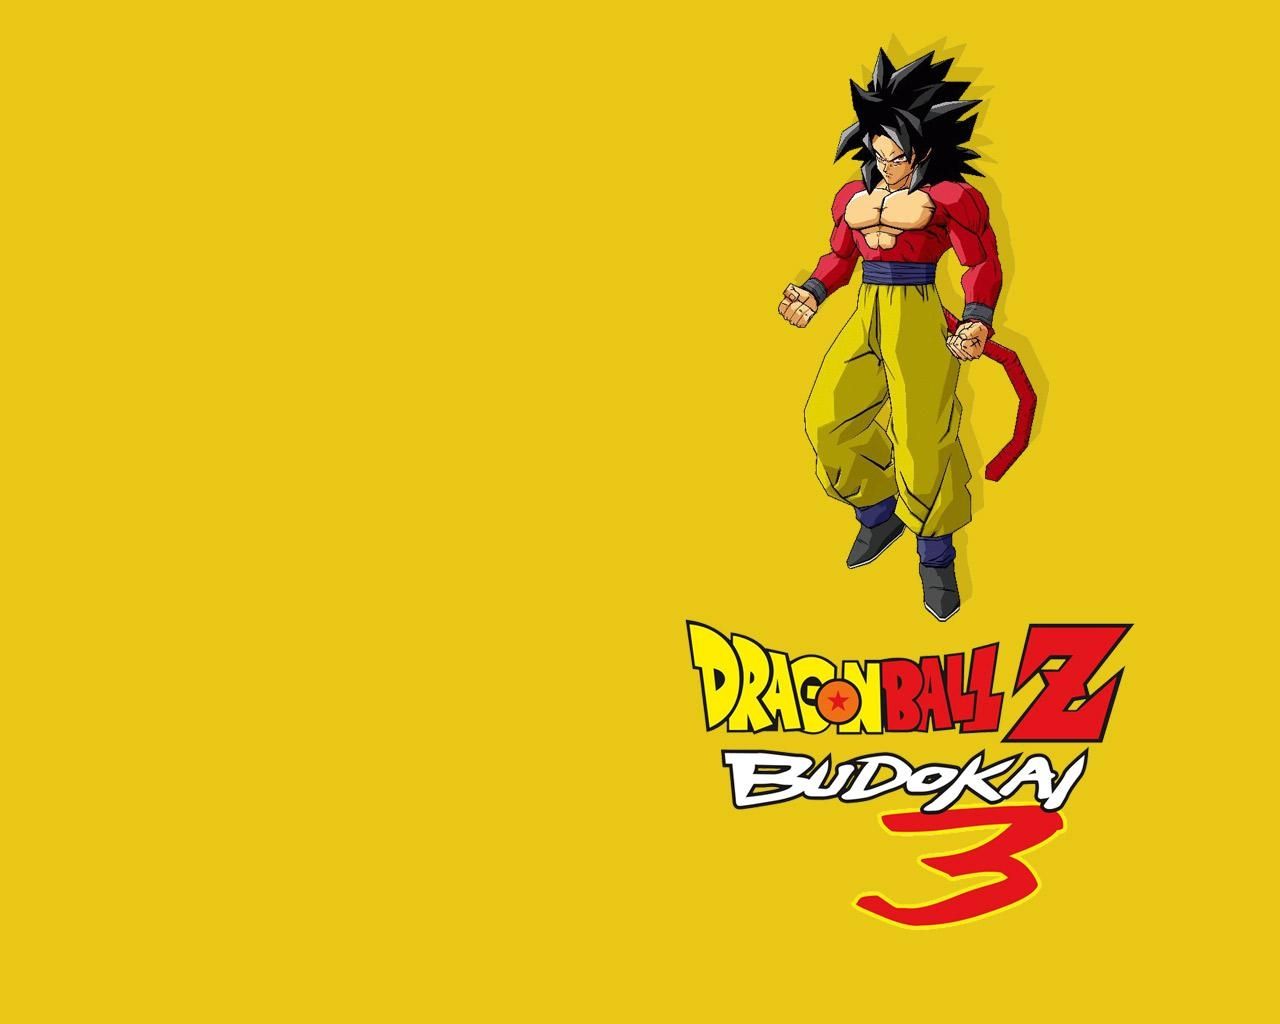 Fond d'écran gratuit de Dragon Ball Z Budokai 3 numéro 36880